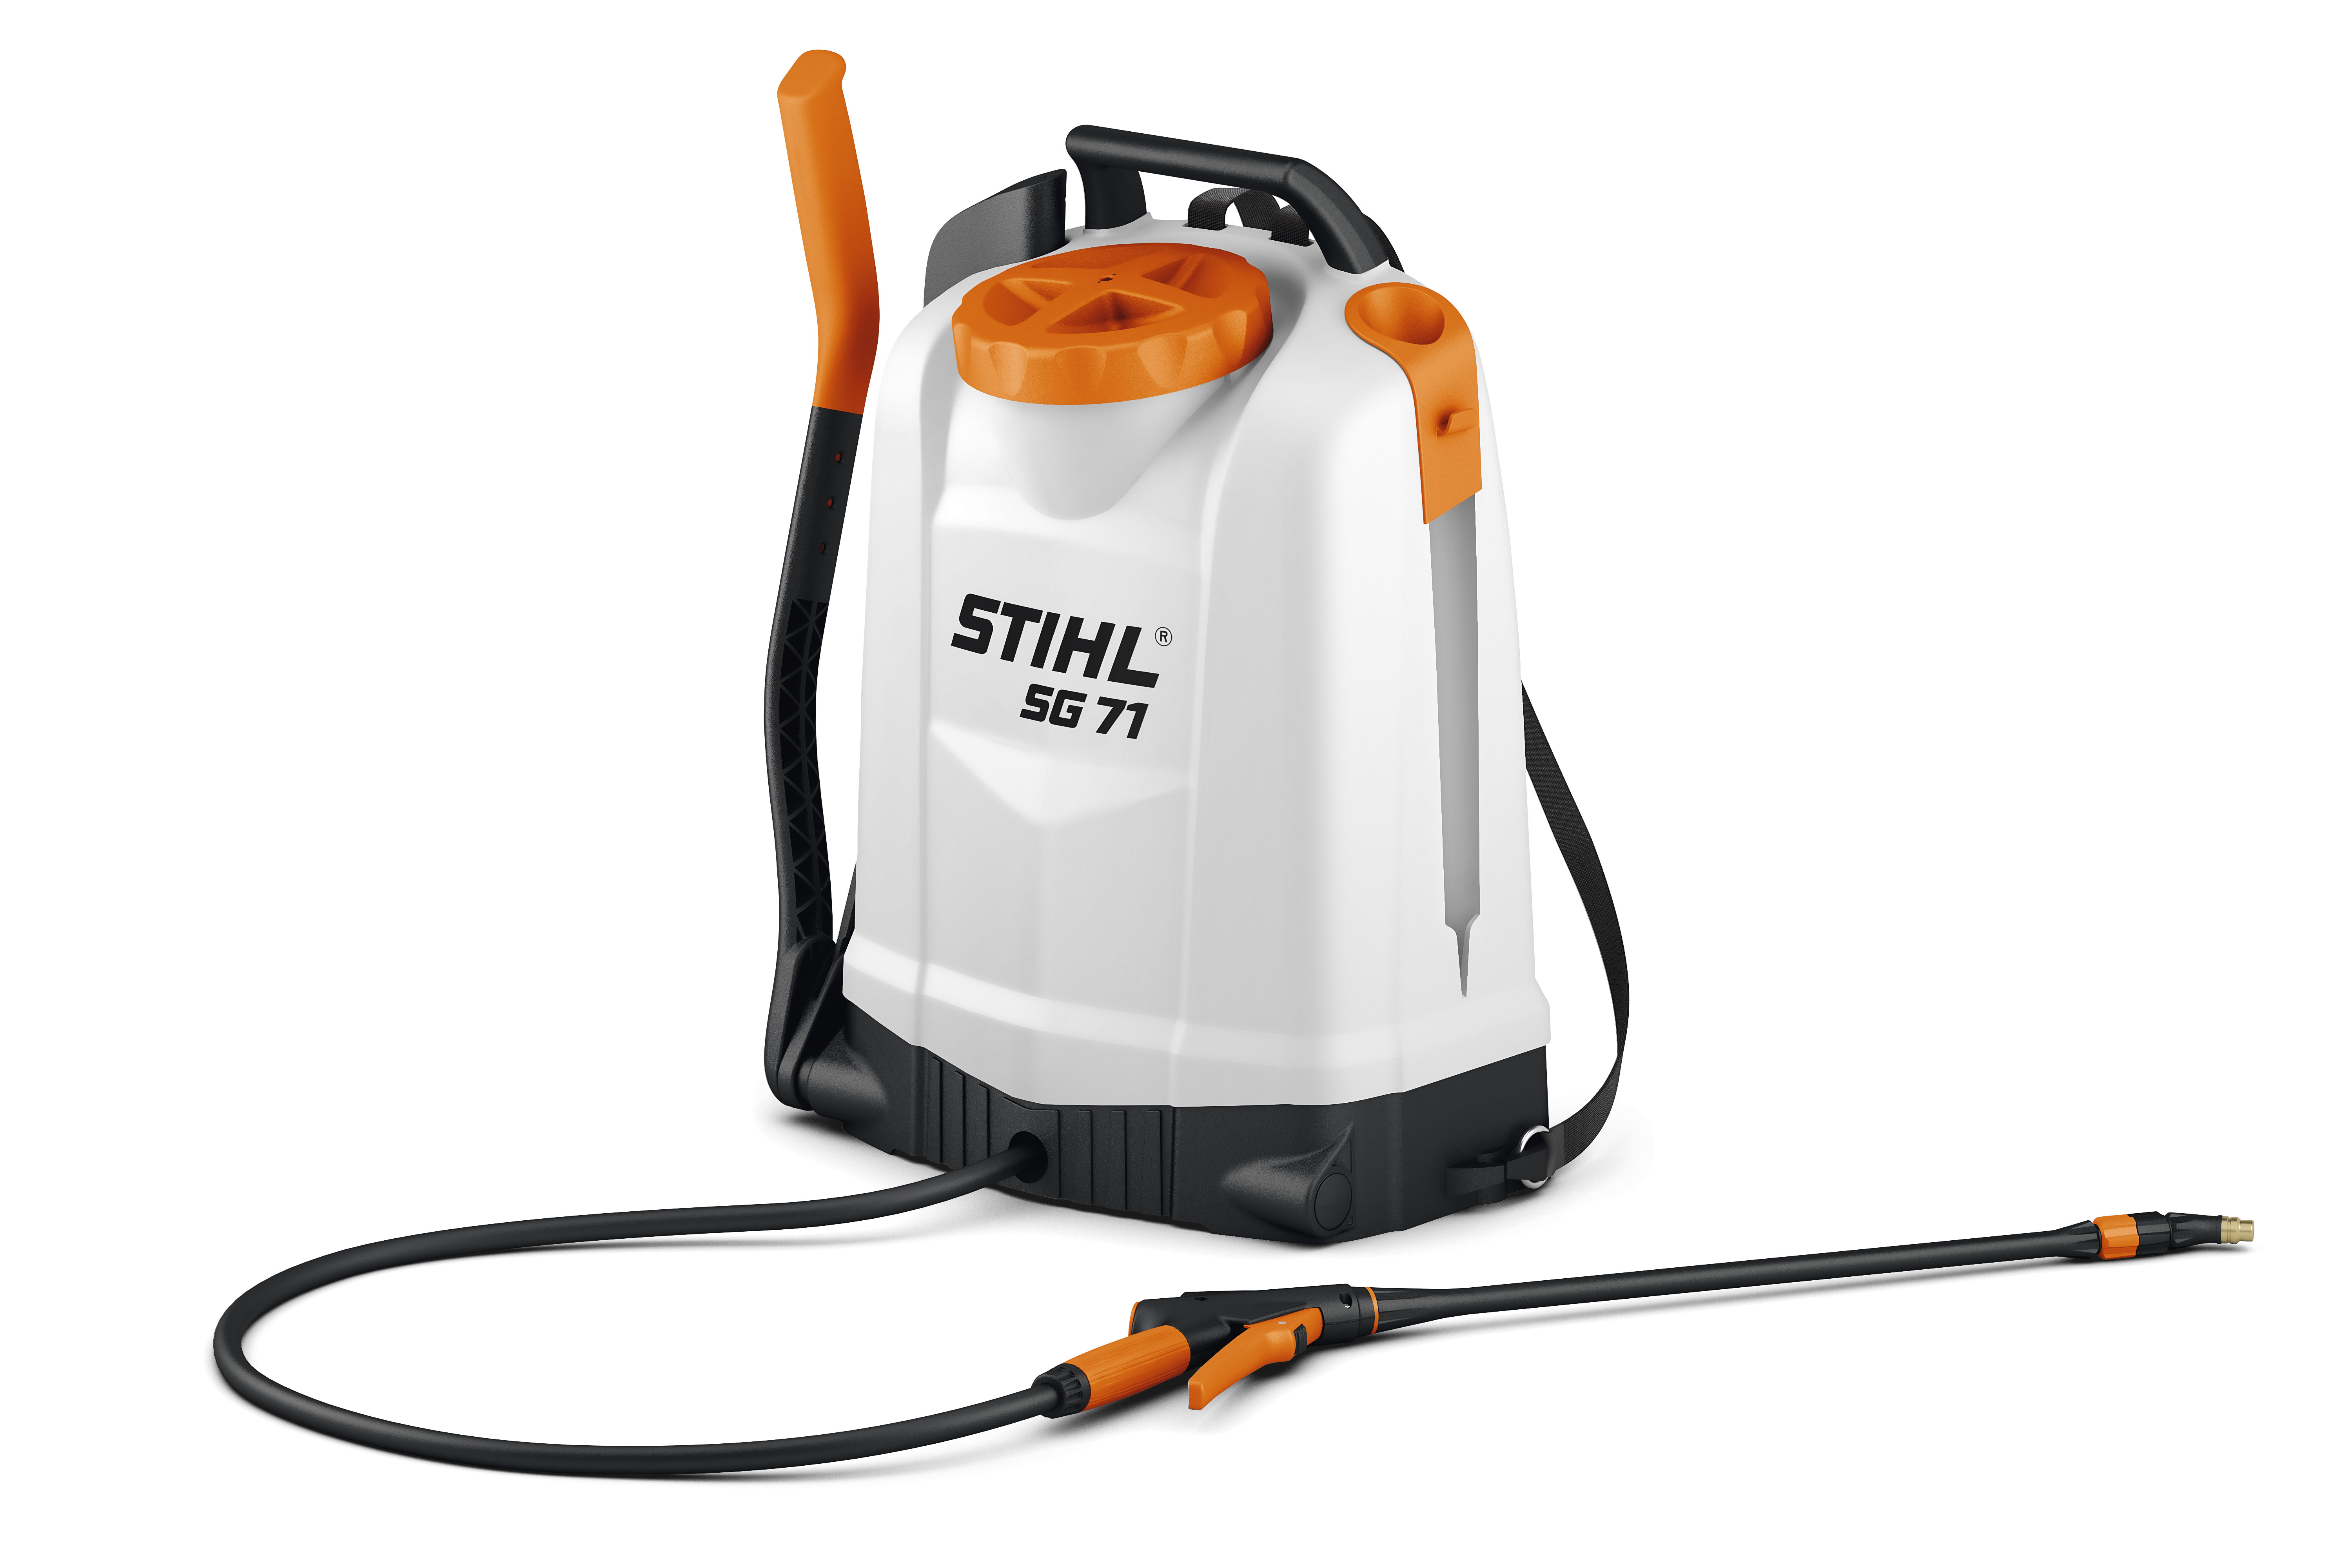 Fumigadora (Atomizador) Stihl SR 200